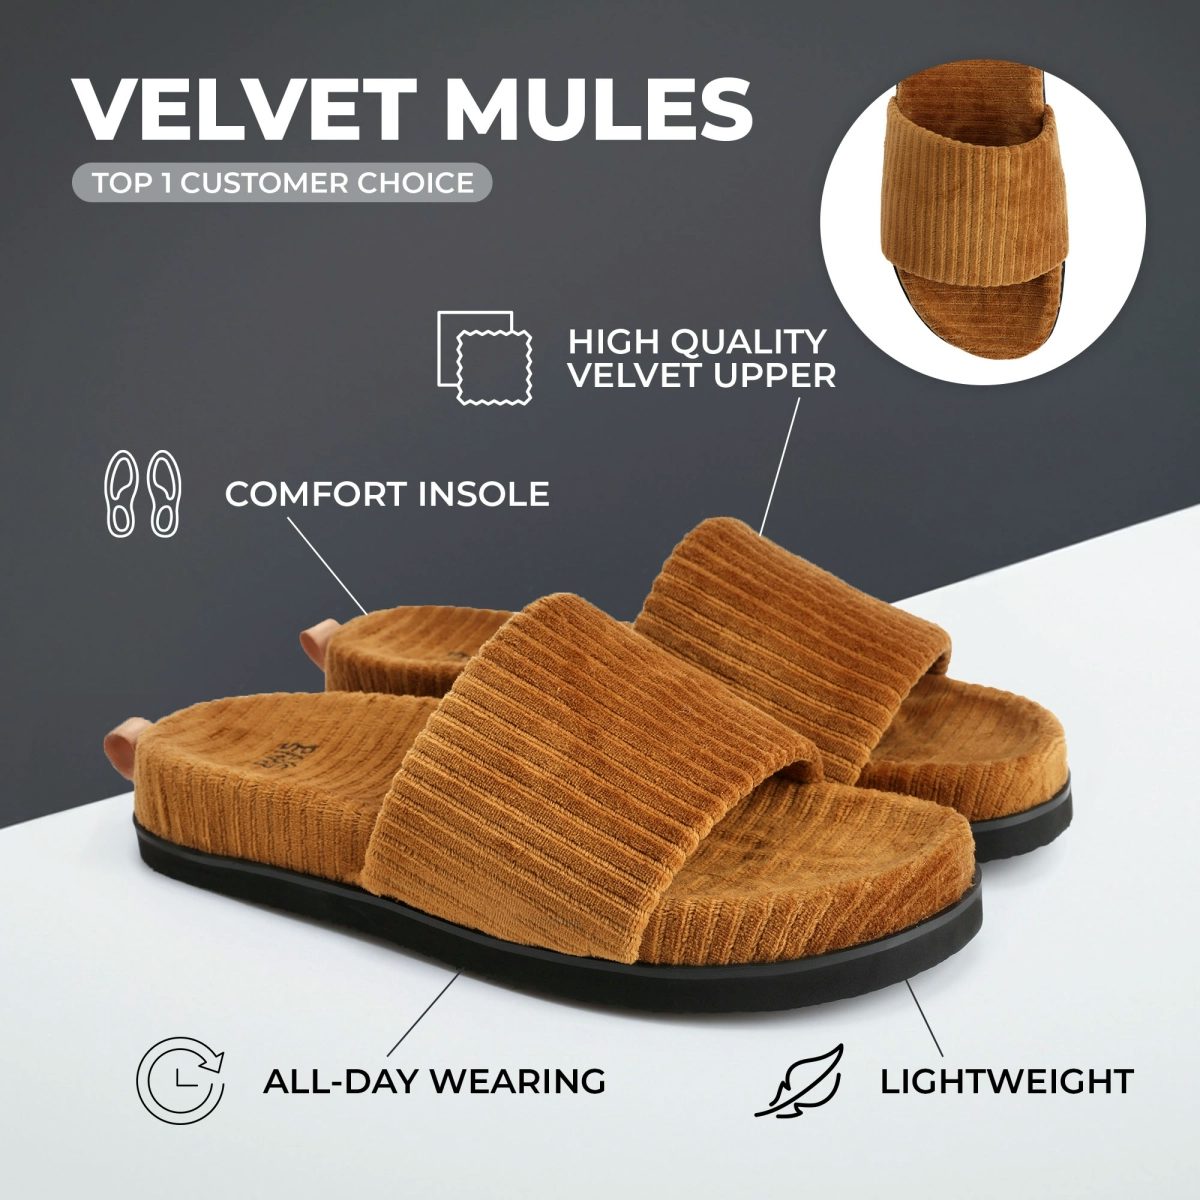 Velvet mules